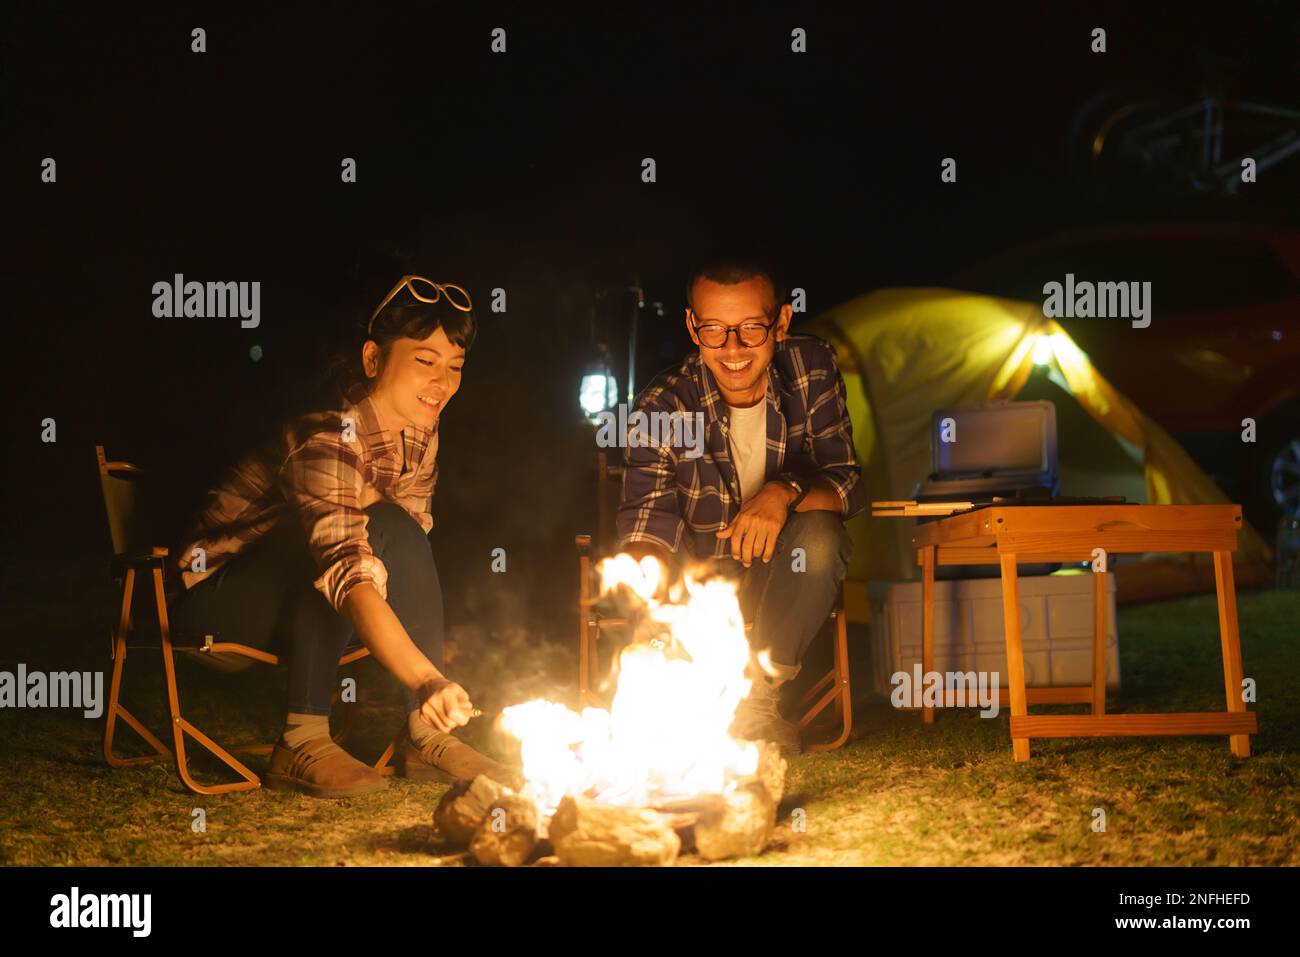 Un couple asiatique grillait du maïs sur un feu, ils s'étaient mis en place pour éclairer la nuit au milieu d'une tente de camping près d'un lac. Banque D'Images